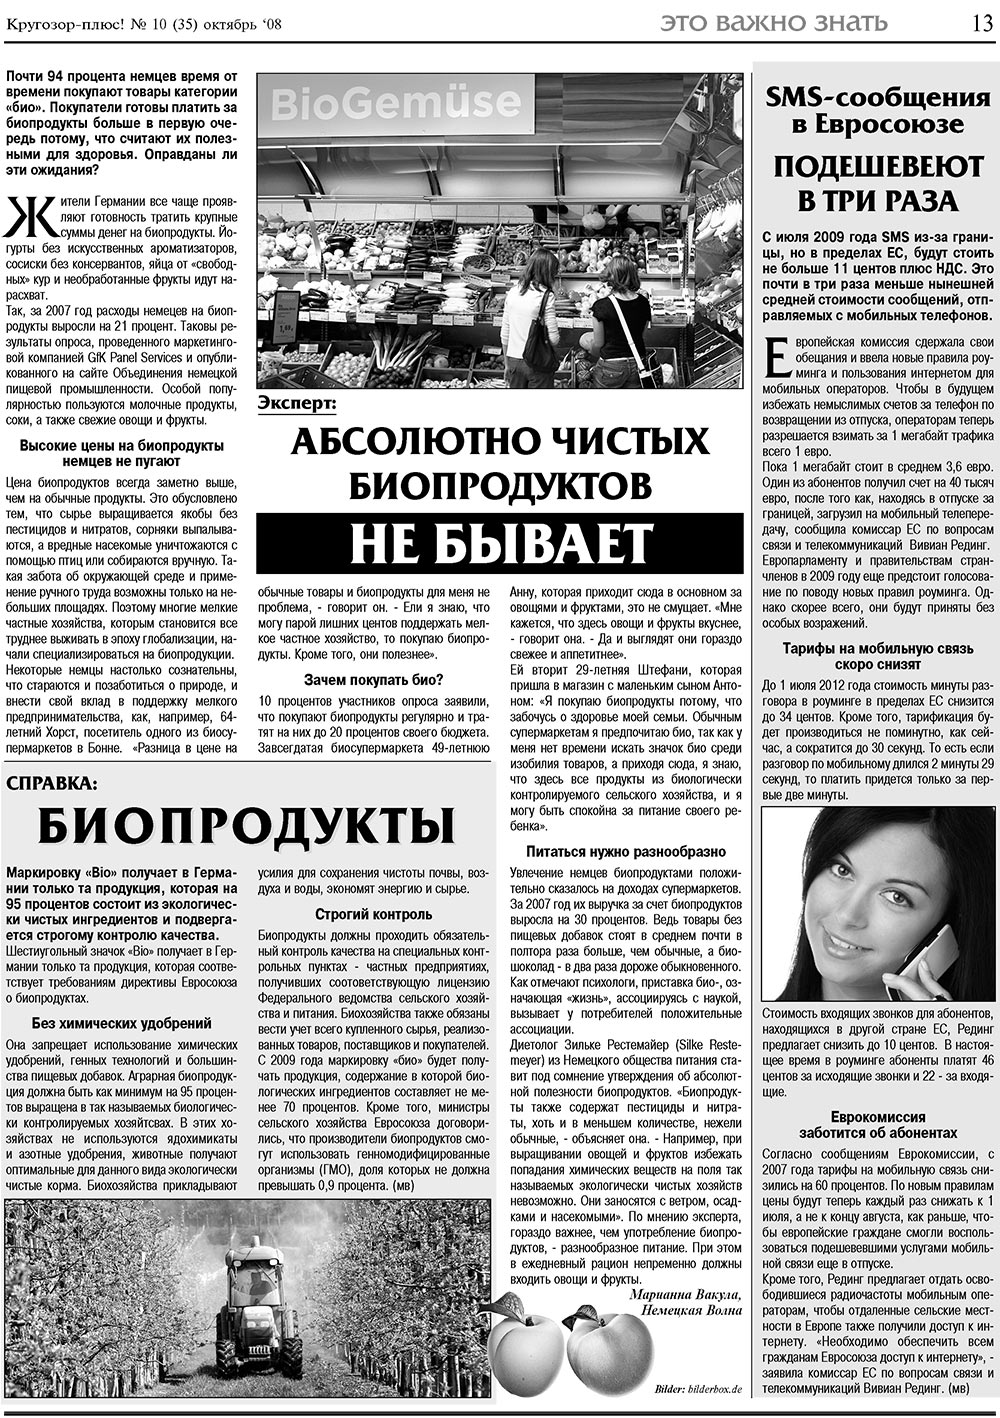 Кругозор плюс!, газета. 2008 №10 стр.13